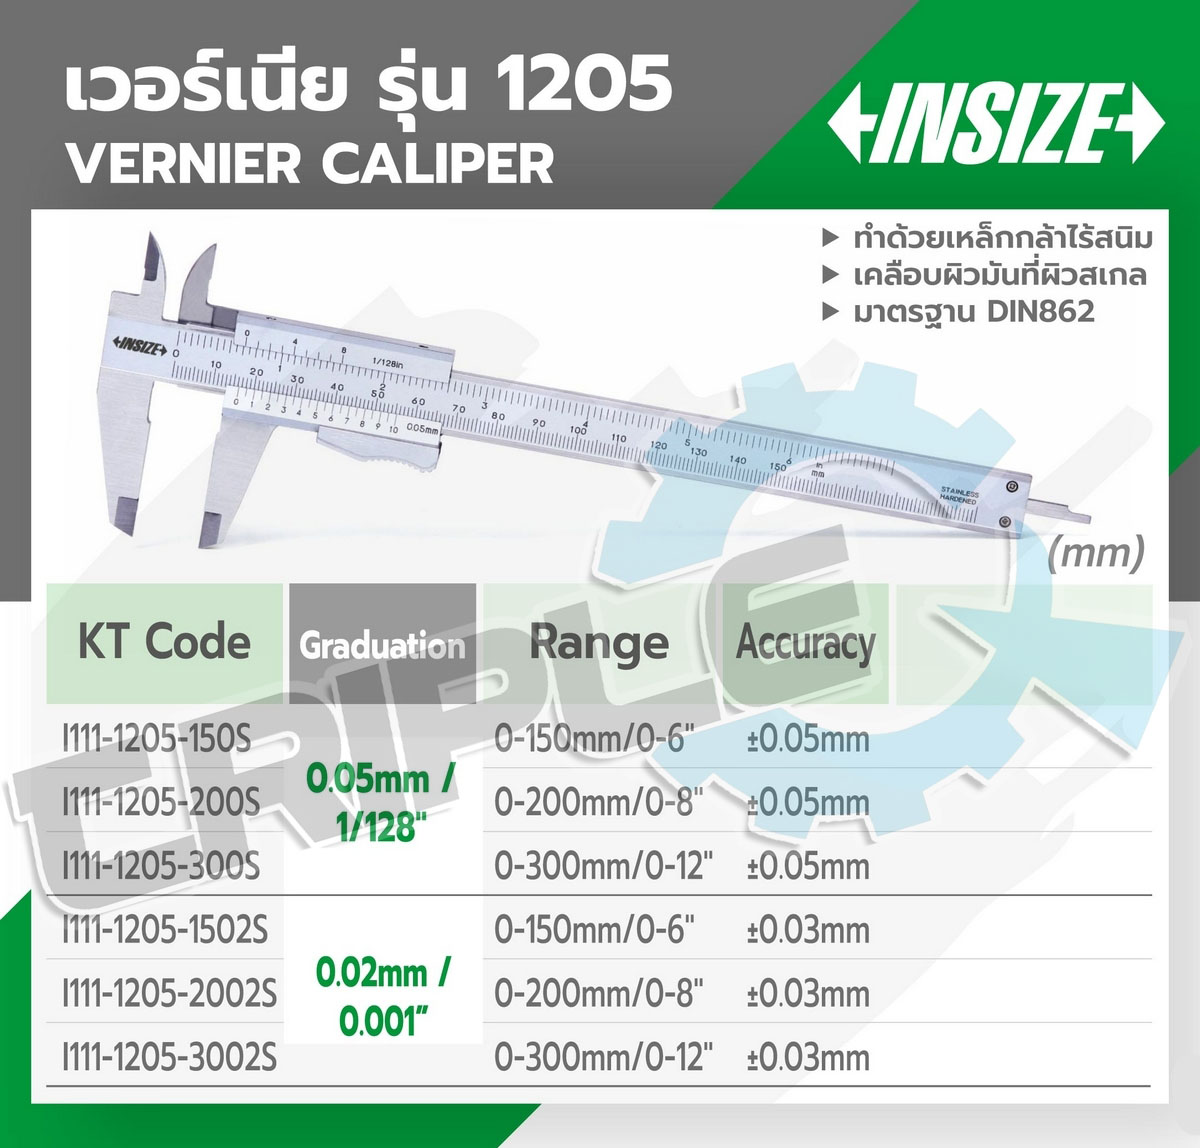 INSIZE - เวอร์เนียร์คาลิปเปอร์ (Vernier Calipers) รุ่น 1205-2002S ขนาด 8 นิ้ว ระยะวัด 0-200 มม. (0-8 นิ้ว) G0.02mm /0.001” ค่าความละเอียด 0.02 มม. (0.0005 นิ้ว) ความแม่นยำ + 0.03 มม.